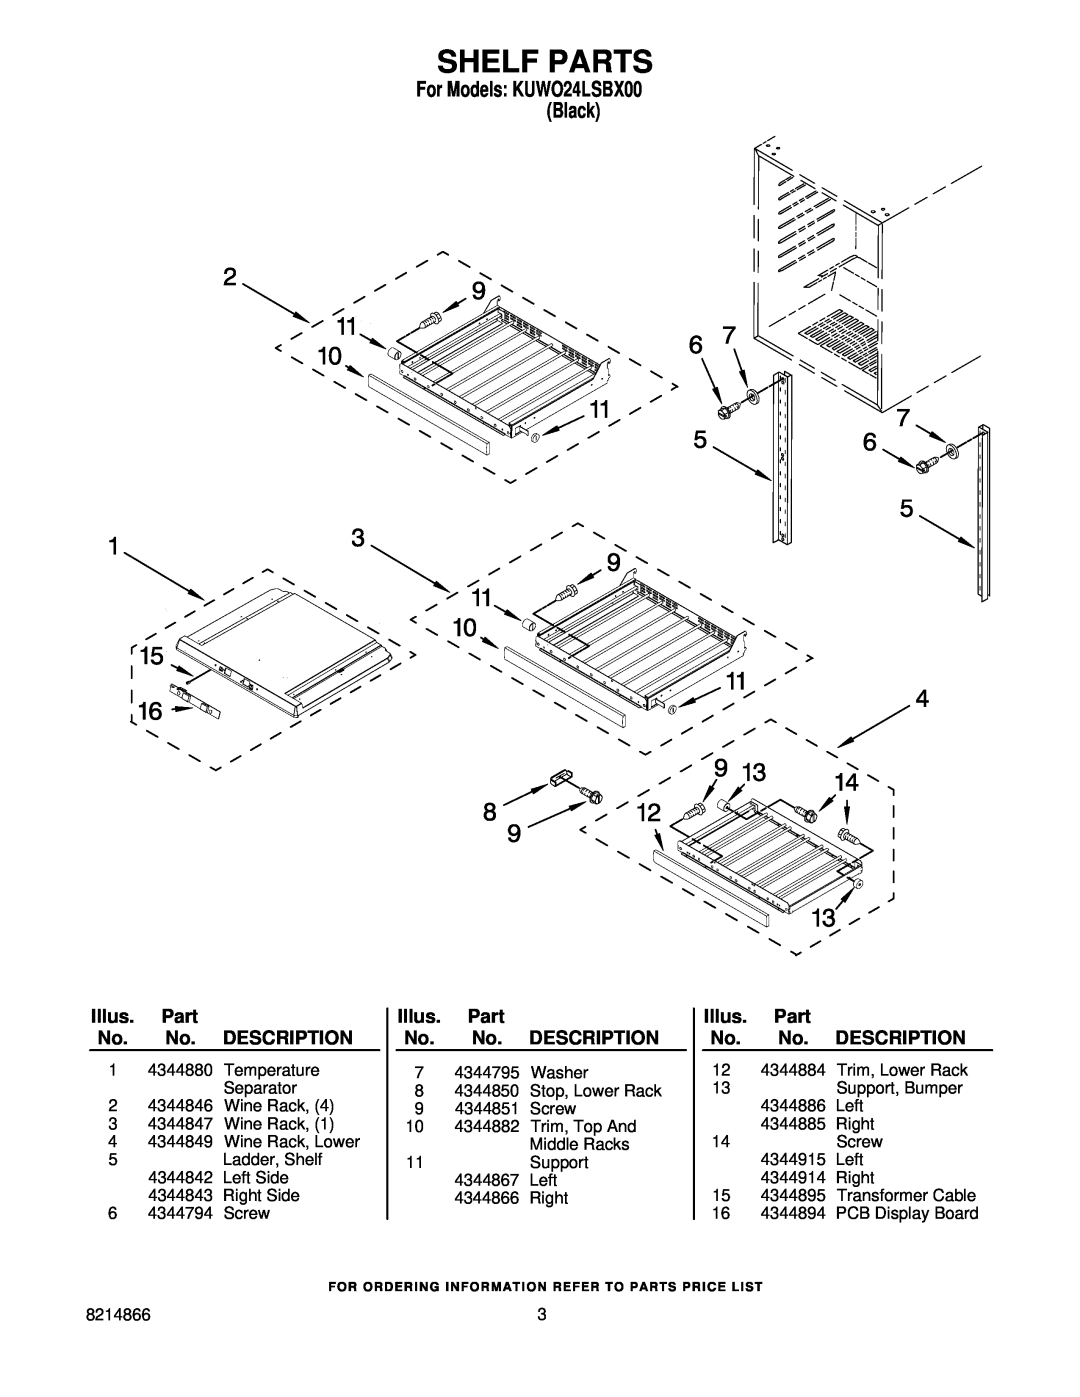 KitchenAid KUWO24LSBX00 manual Shelf Parts, Illus. Part No. No. DESCRIPTION 